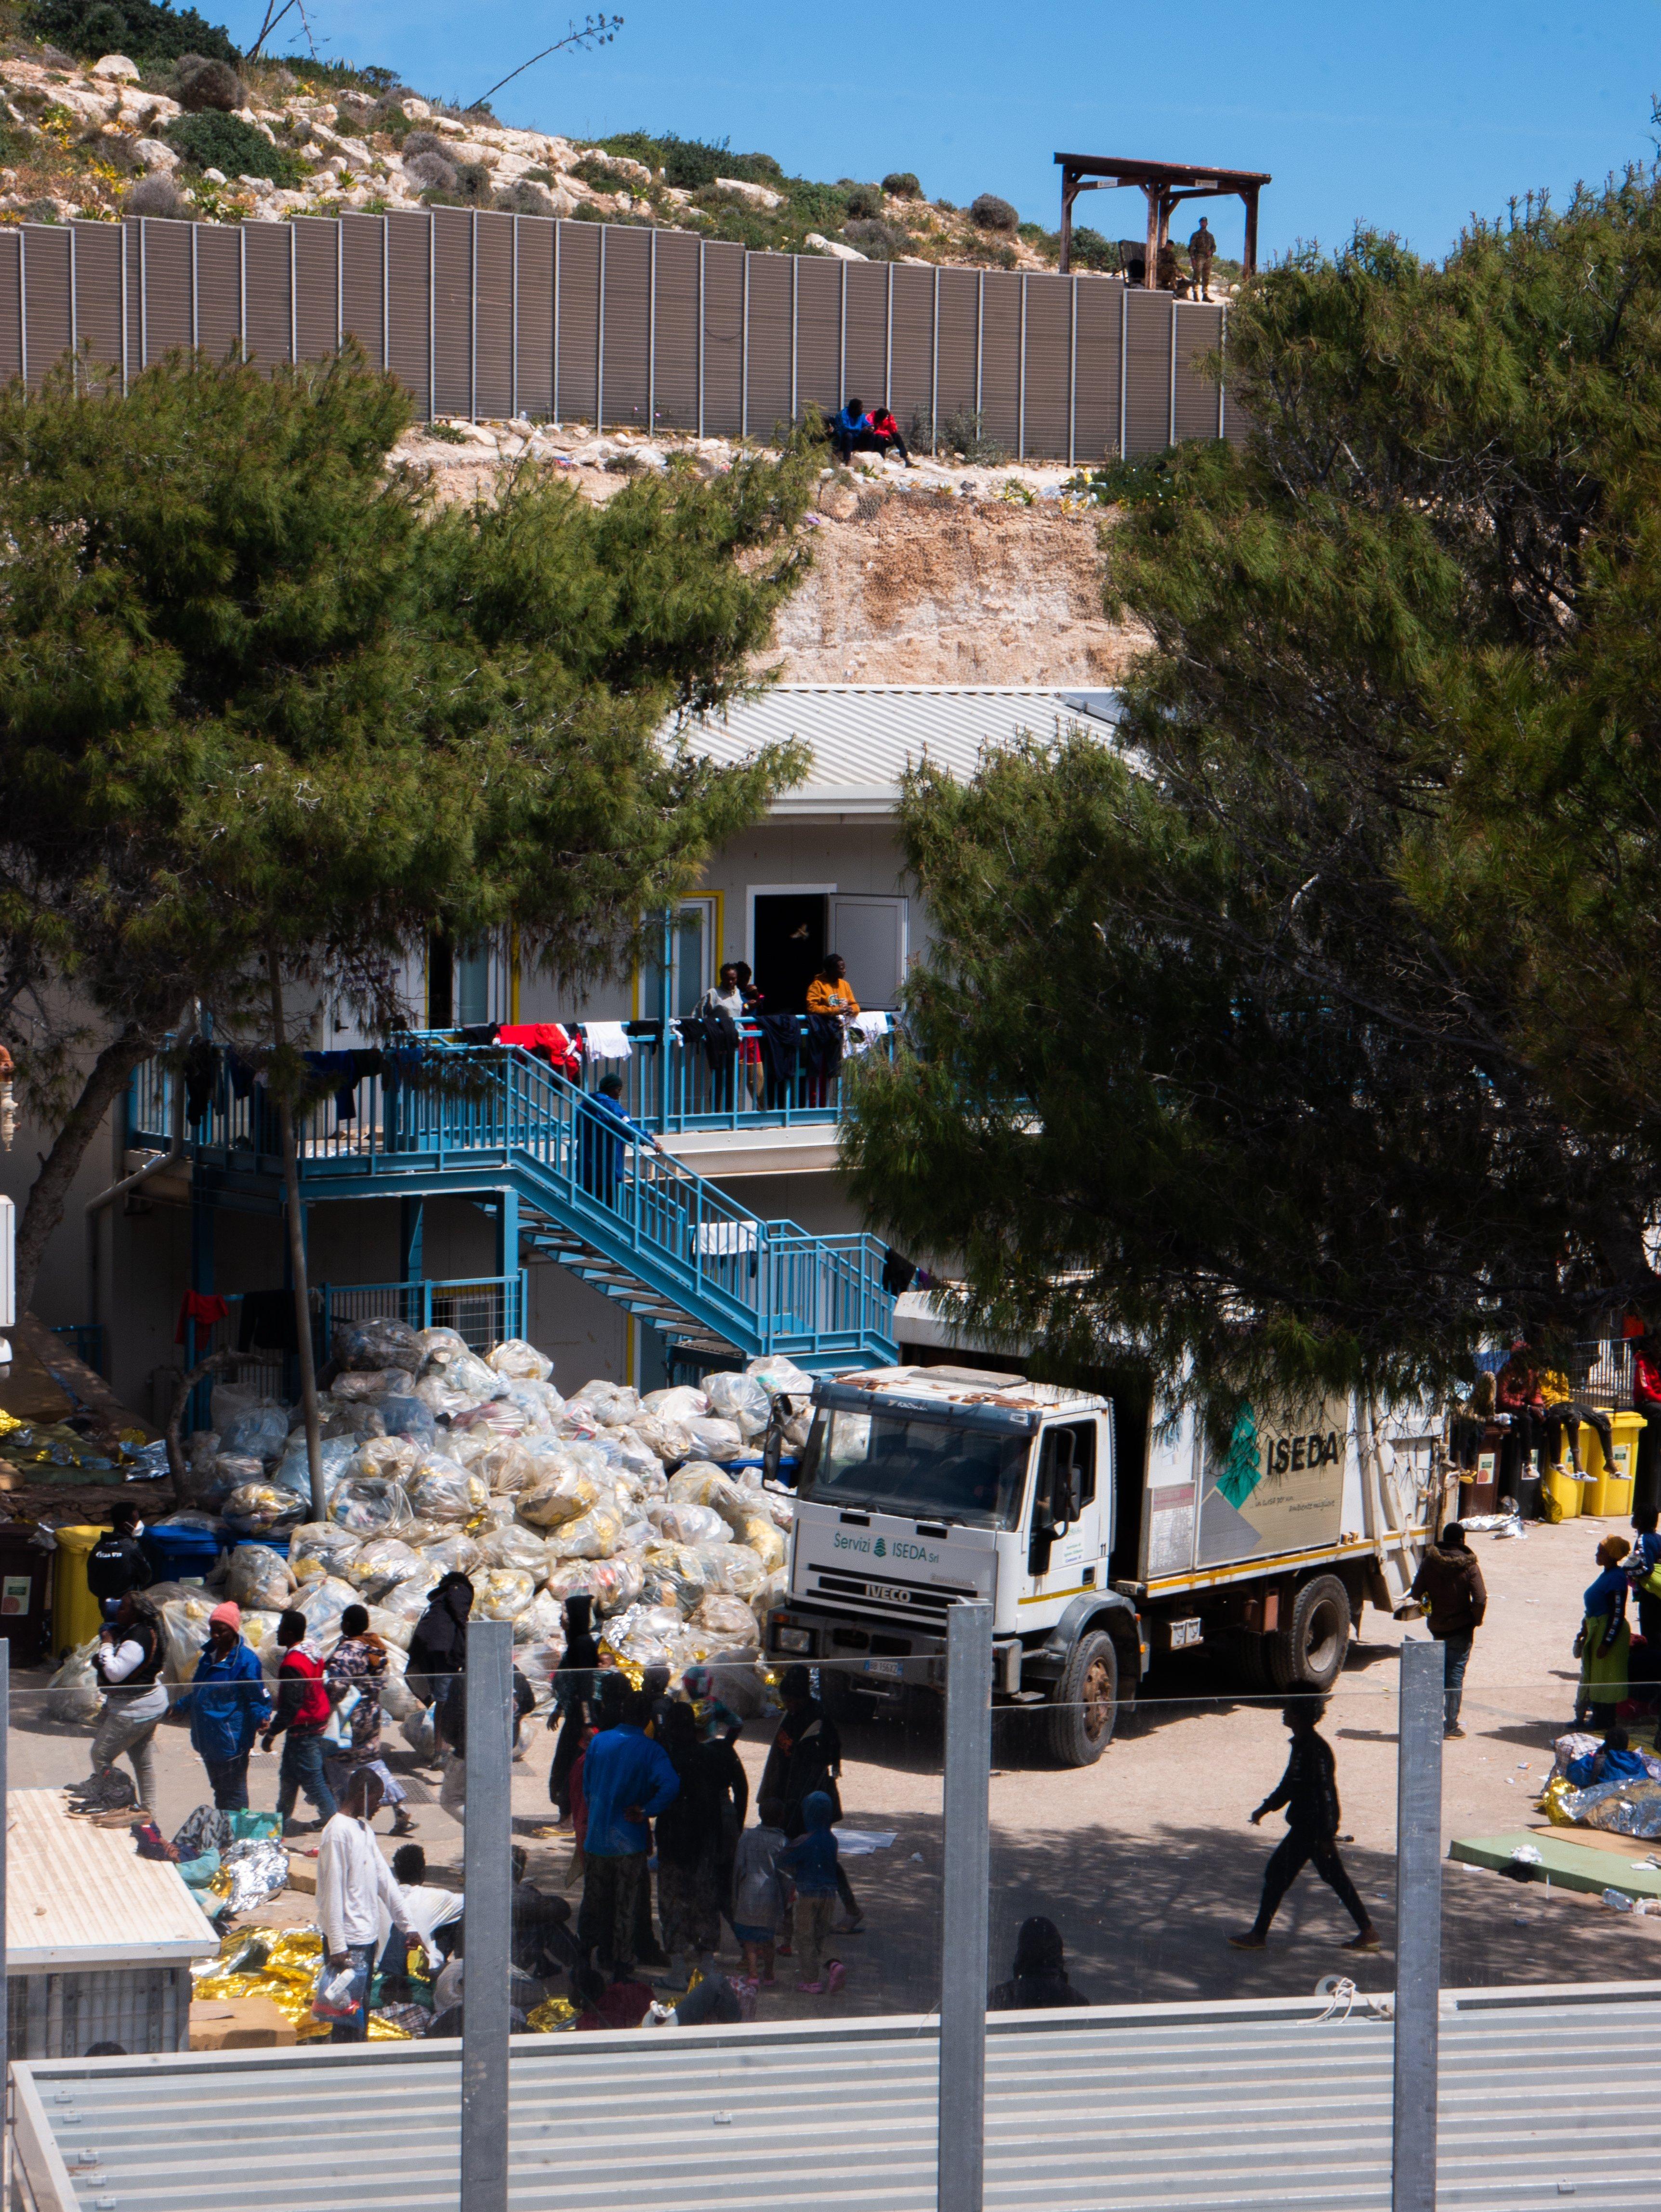 Ogrodzony teren ośrodka dla uchodźców, ludzie noszą worki ze śmieciami